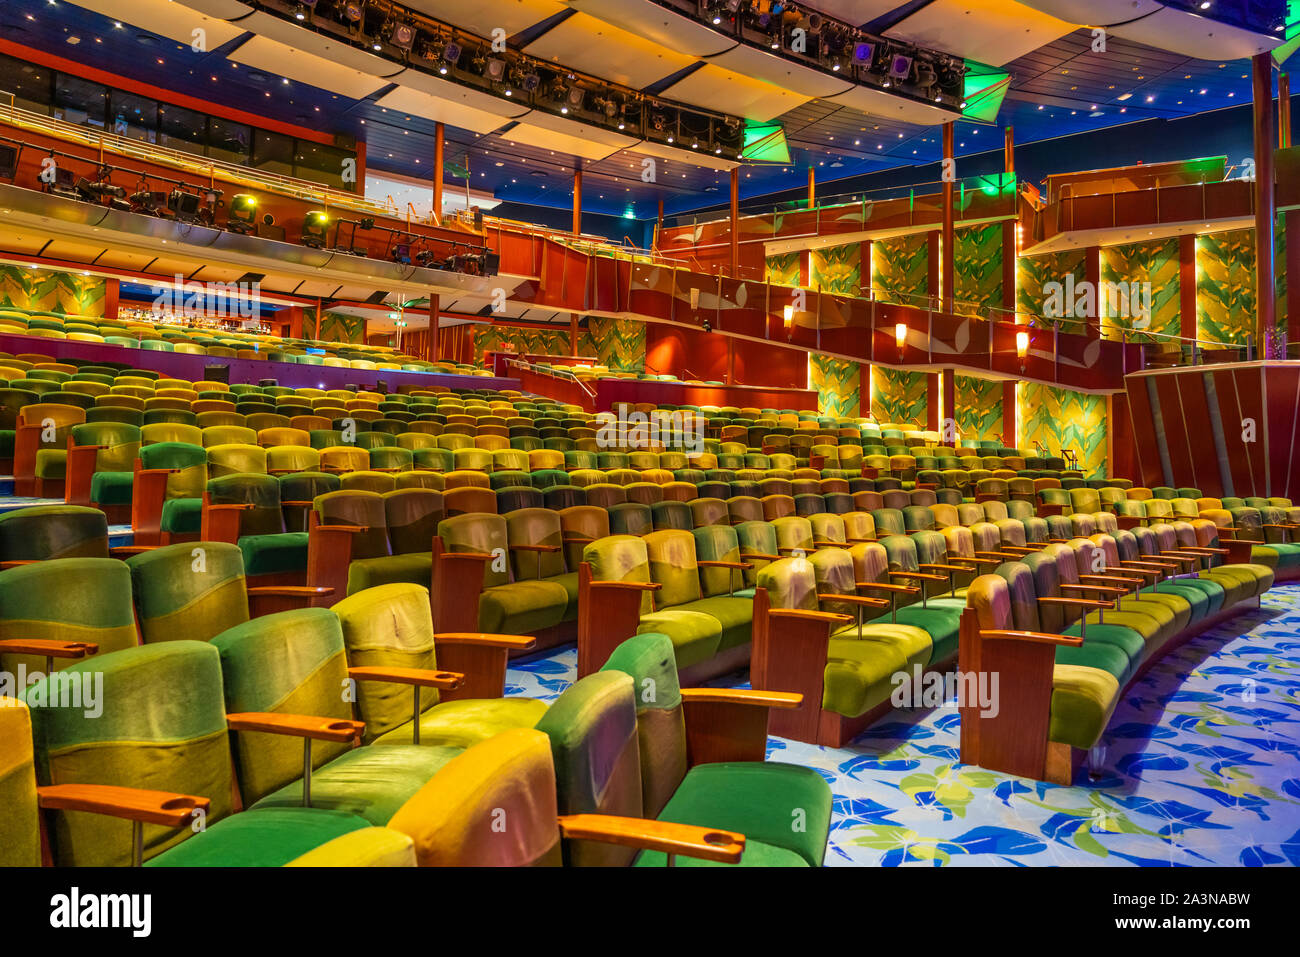 Il Teatro tropicale a bordo della Royal Caribbean Cruise Ship serenata dei mari. Foto Stock